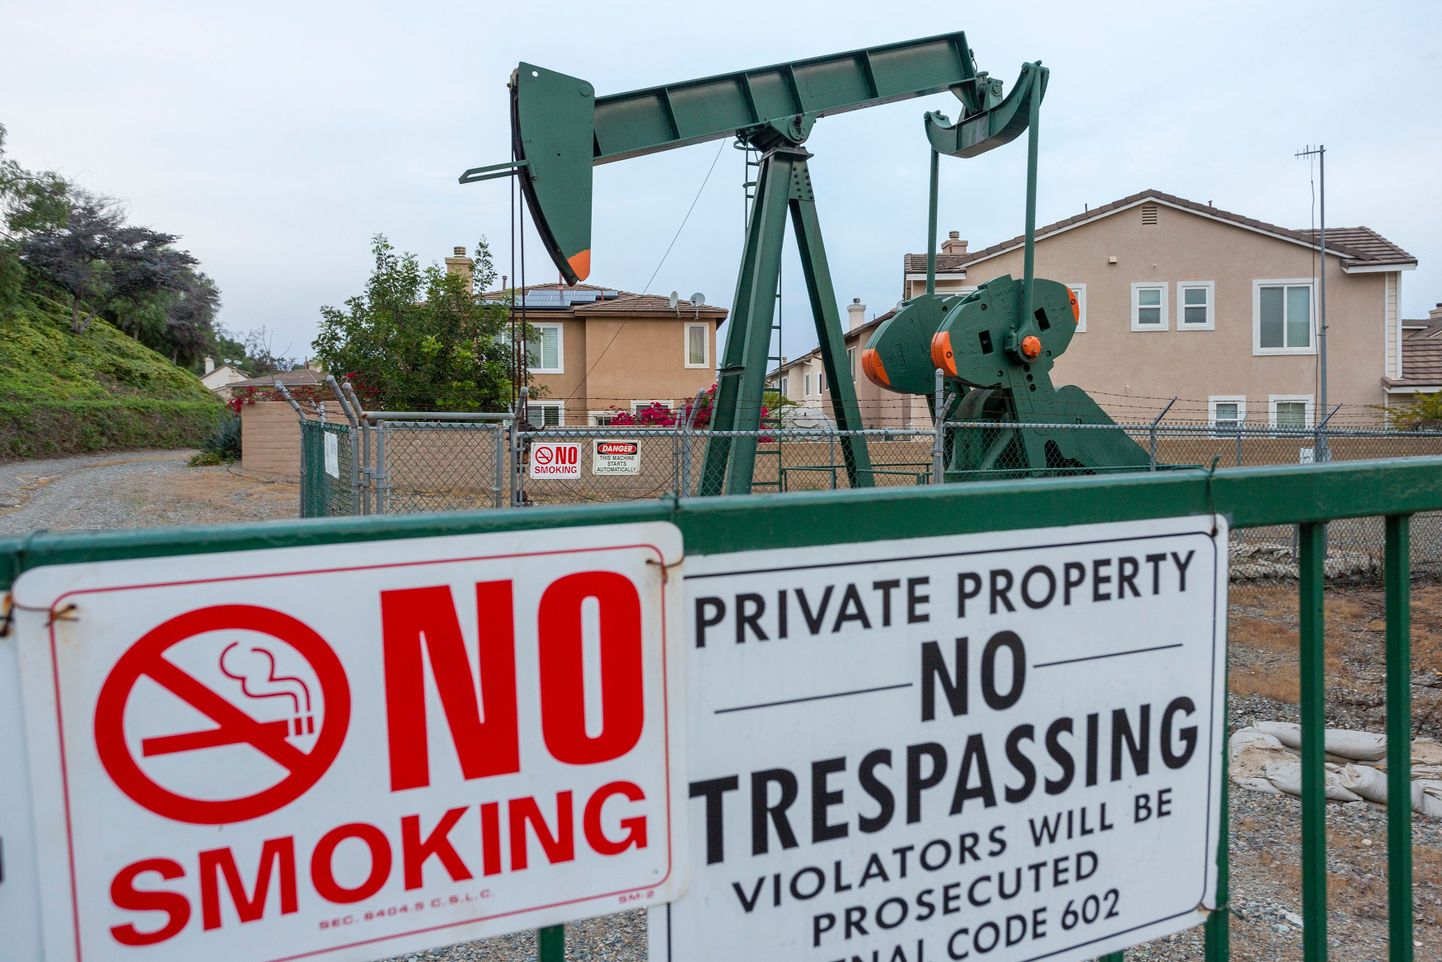 Naftapump Long Beach naftaväljal elurajooni vahetus läheduses.